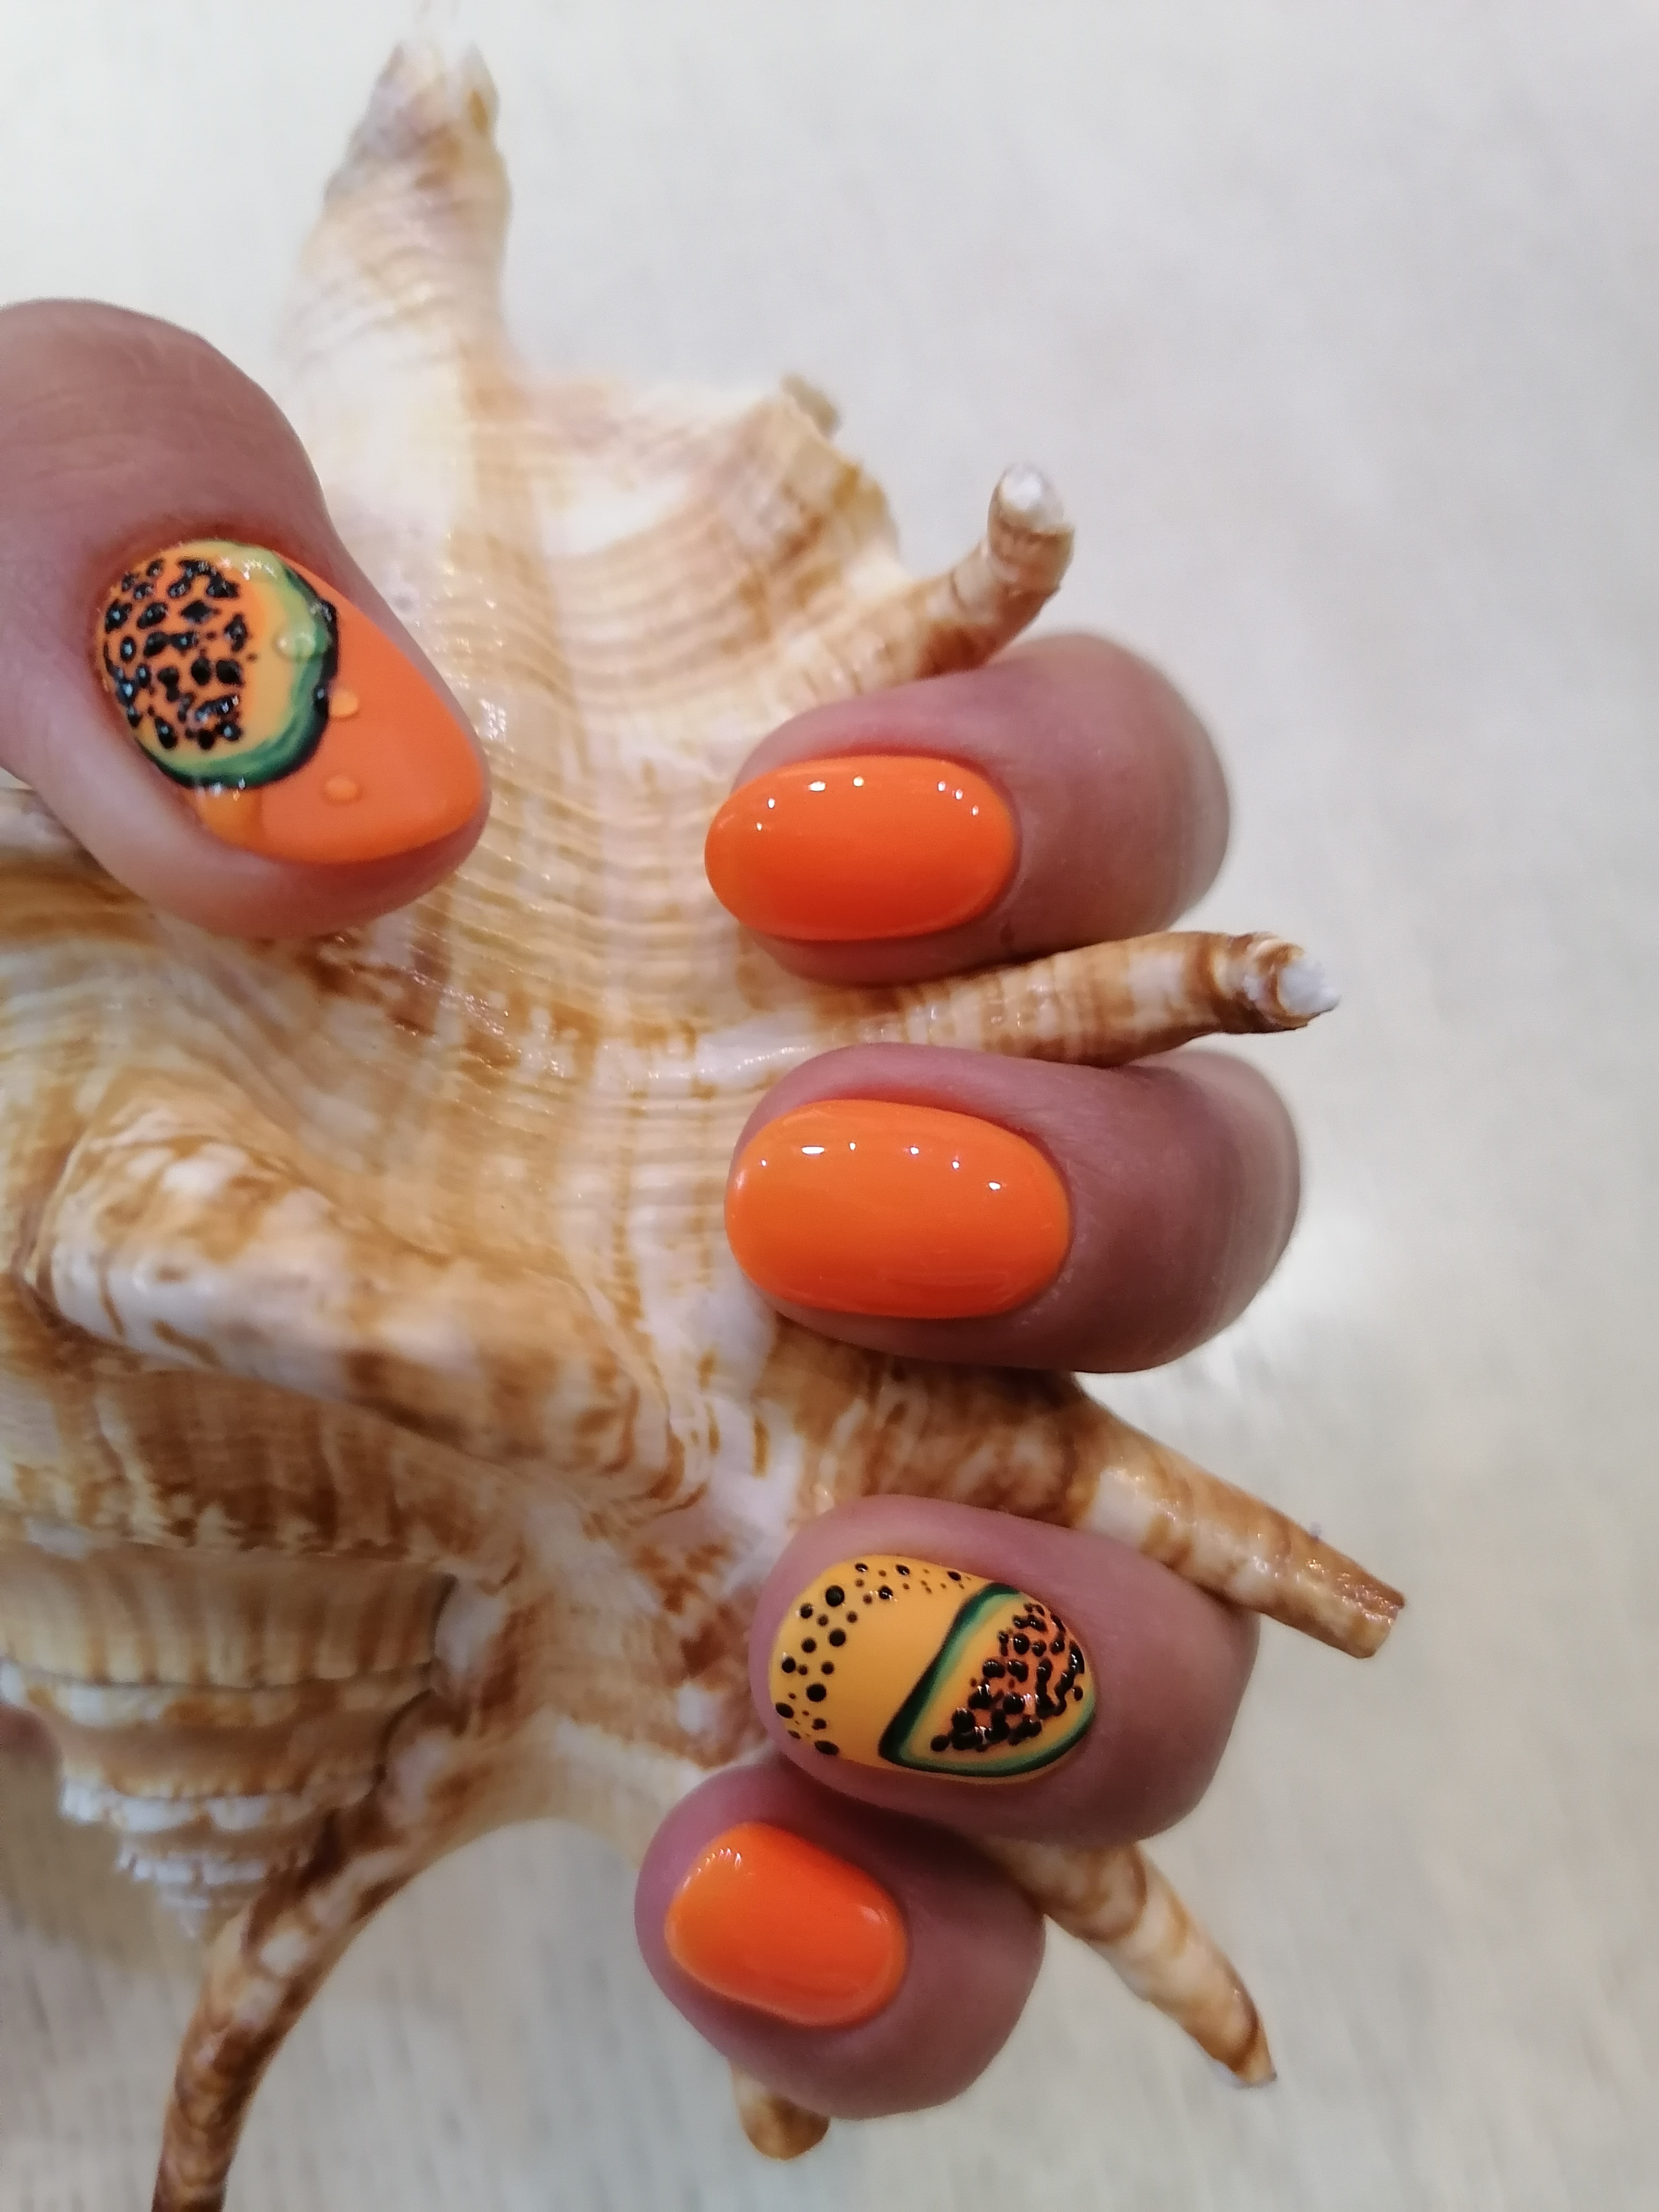 Марикюр с фруктовым рисунком в оранжевом цвете на короткие ногти.